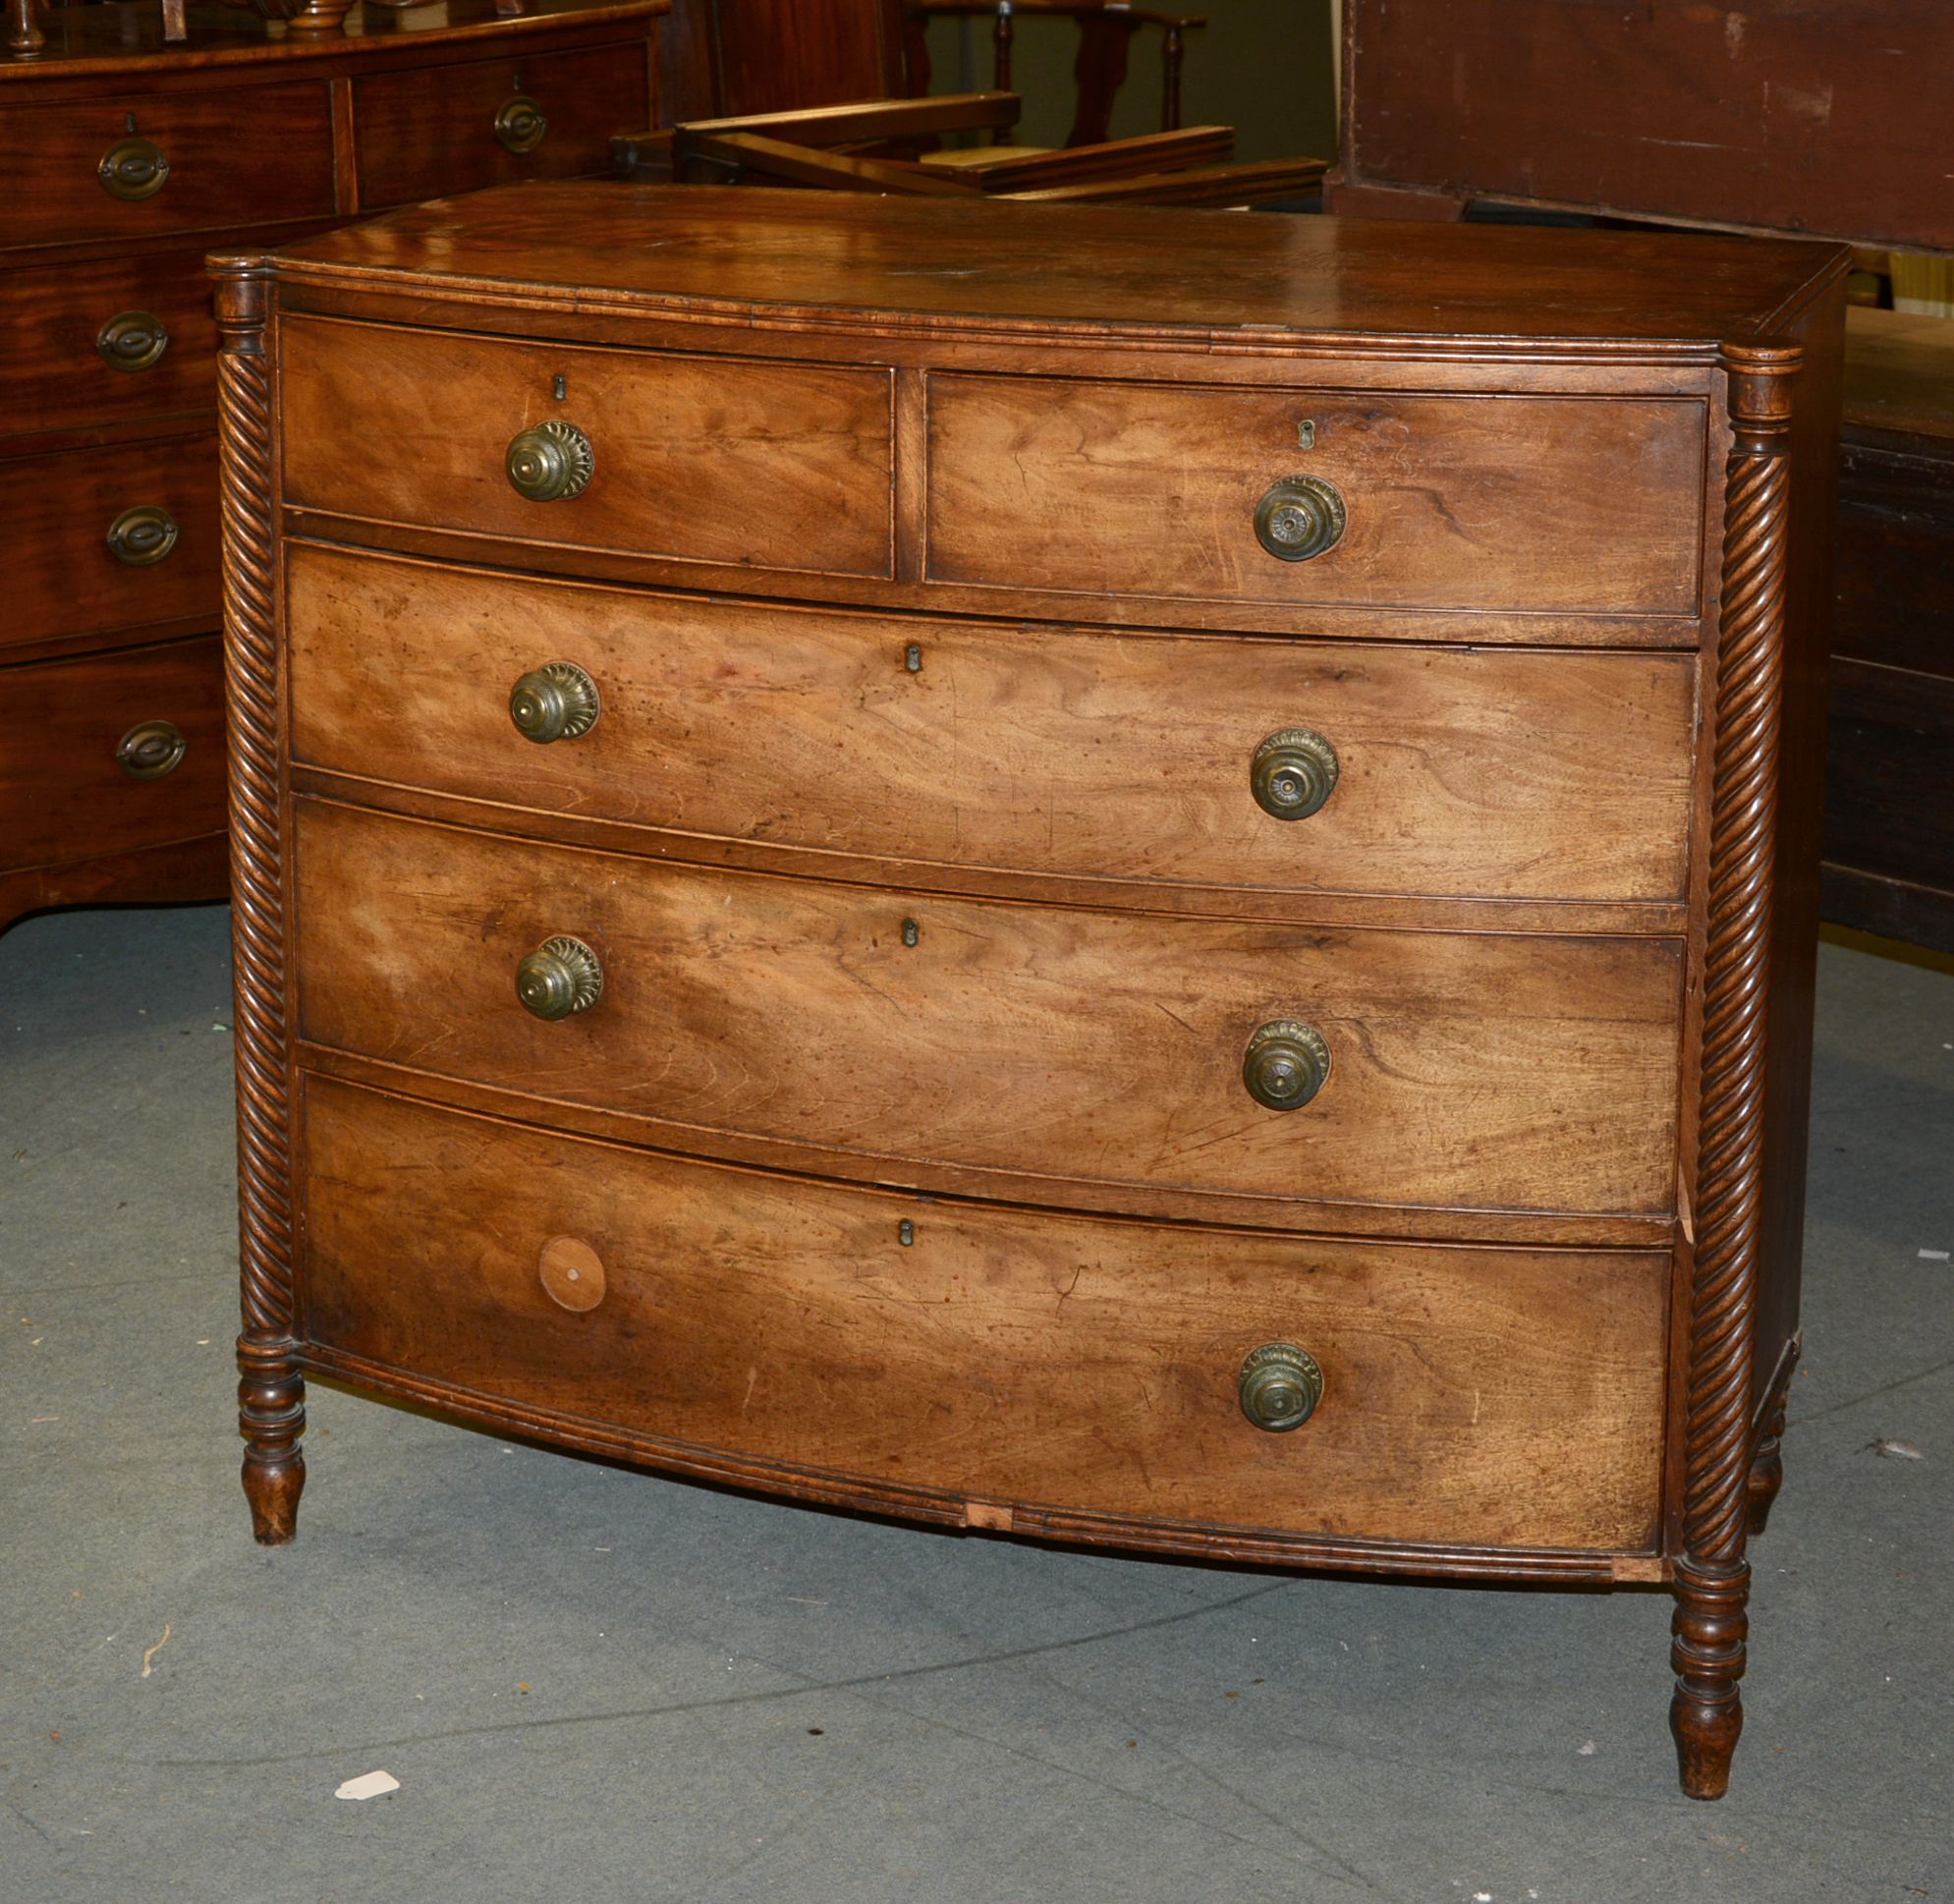 Ω A George IV mahogany and rosewood banded chest of drawers, circa 1825, 103cm high, 114cm wide